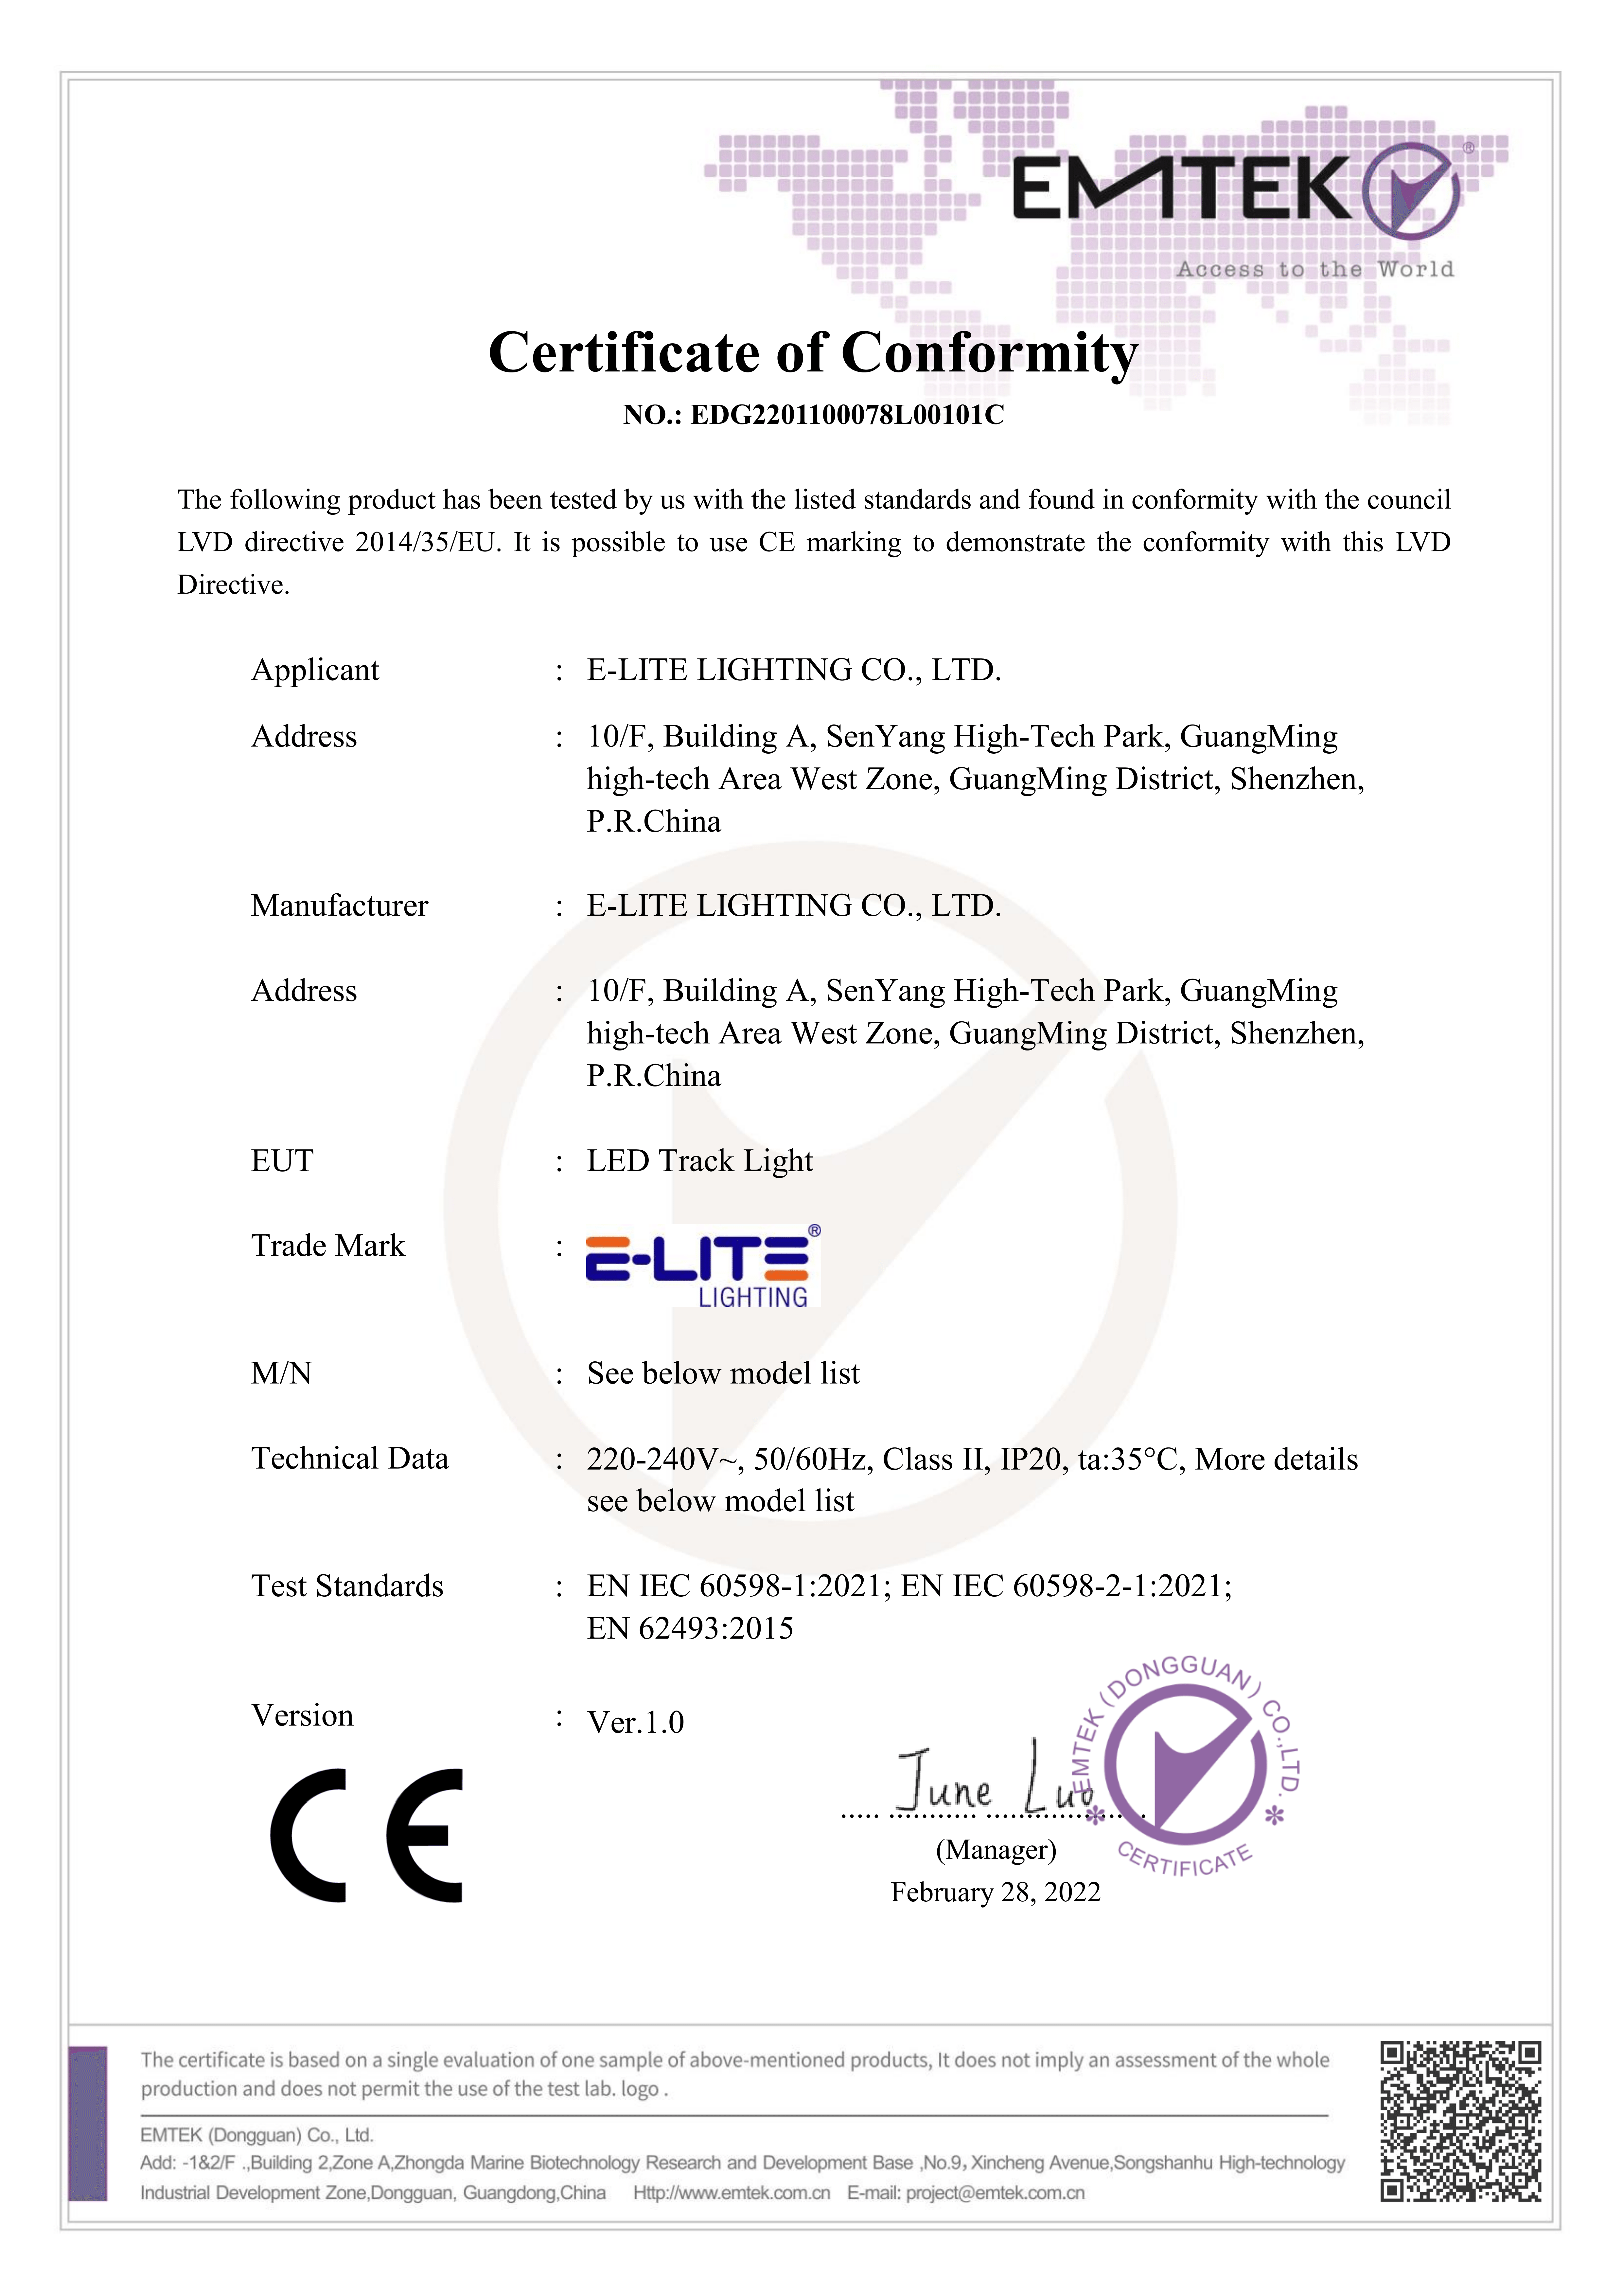 CE Certificate LVD Directive